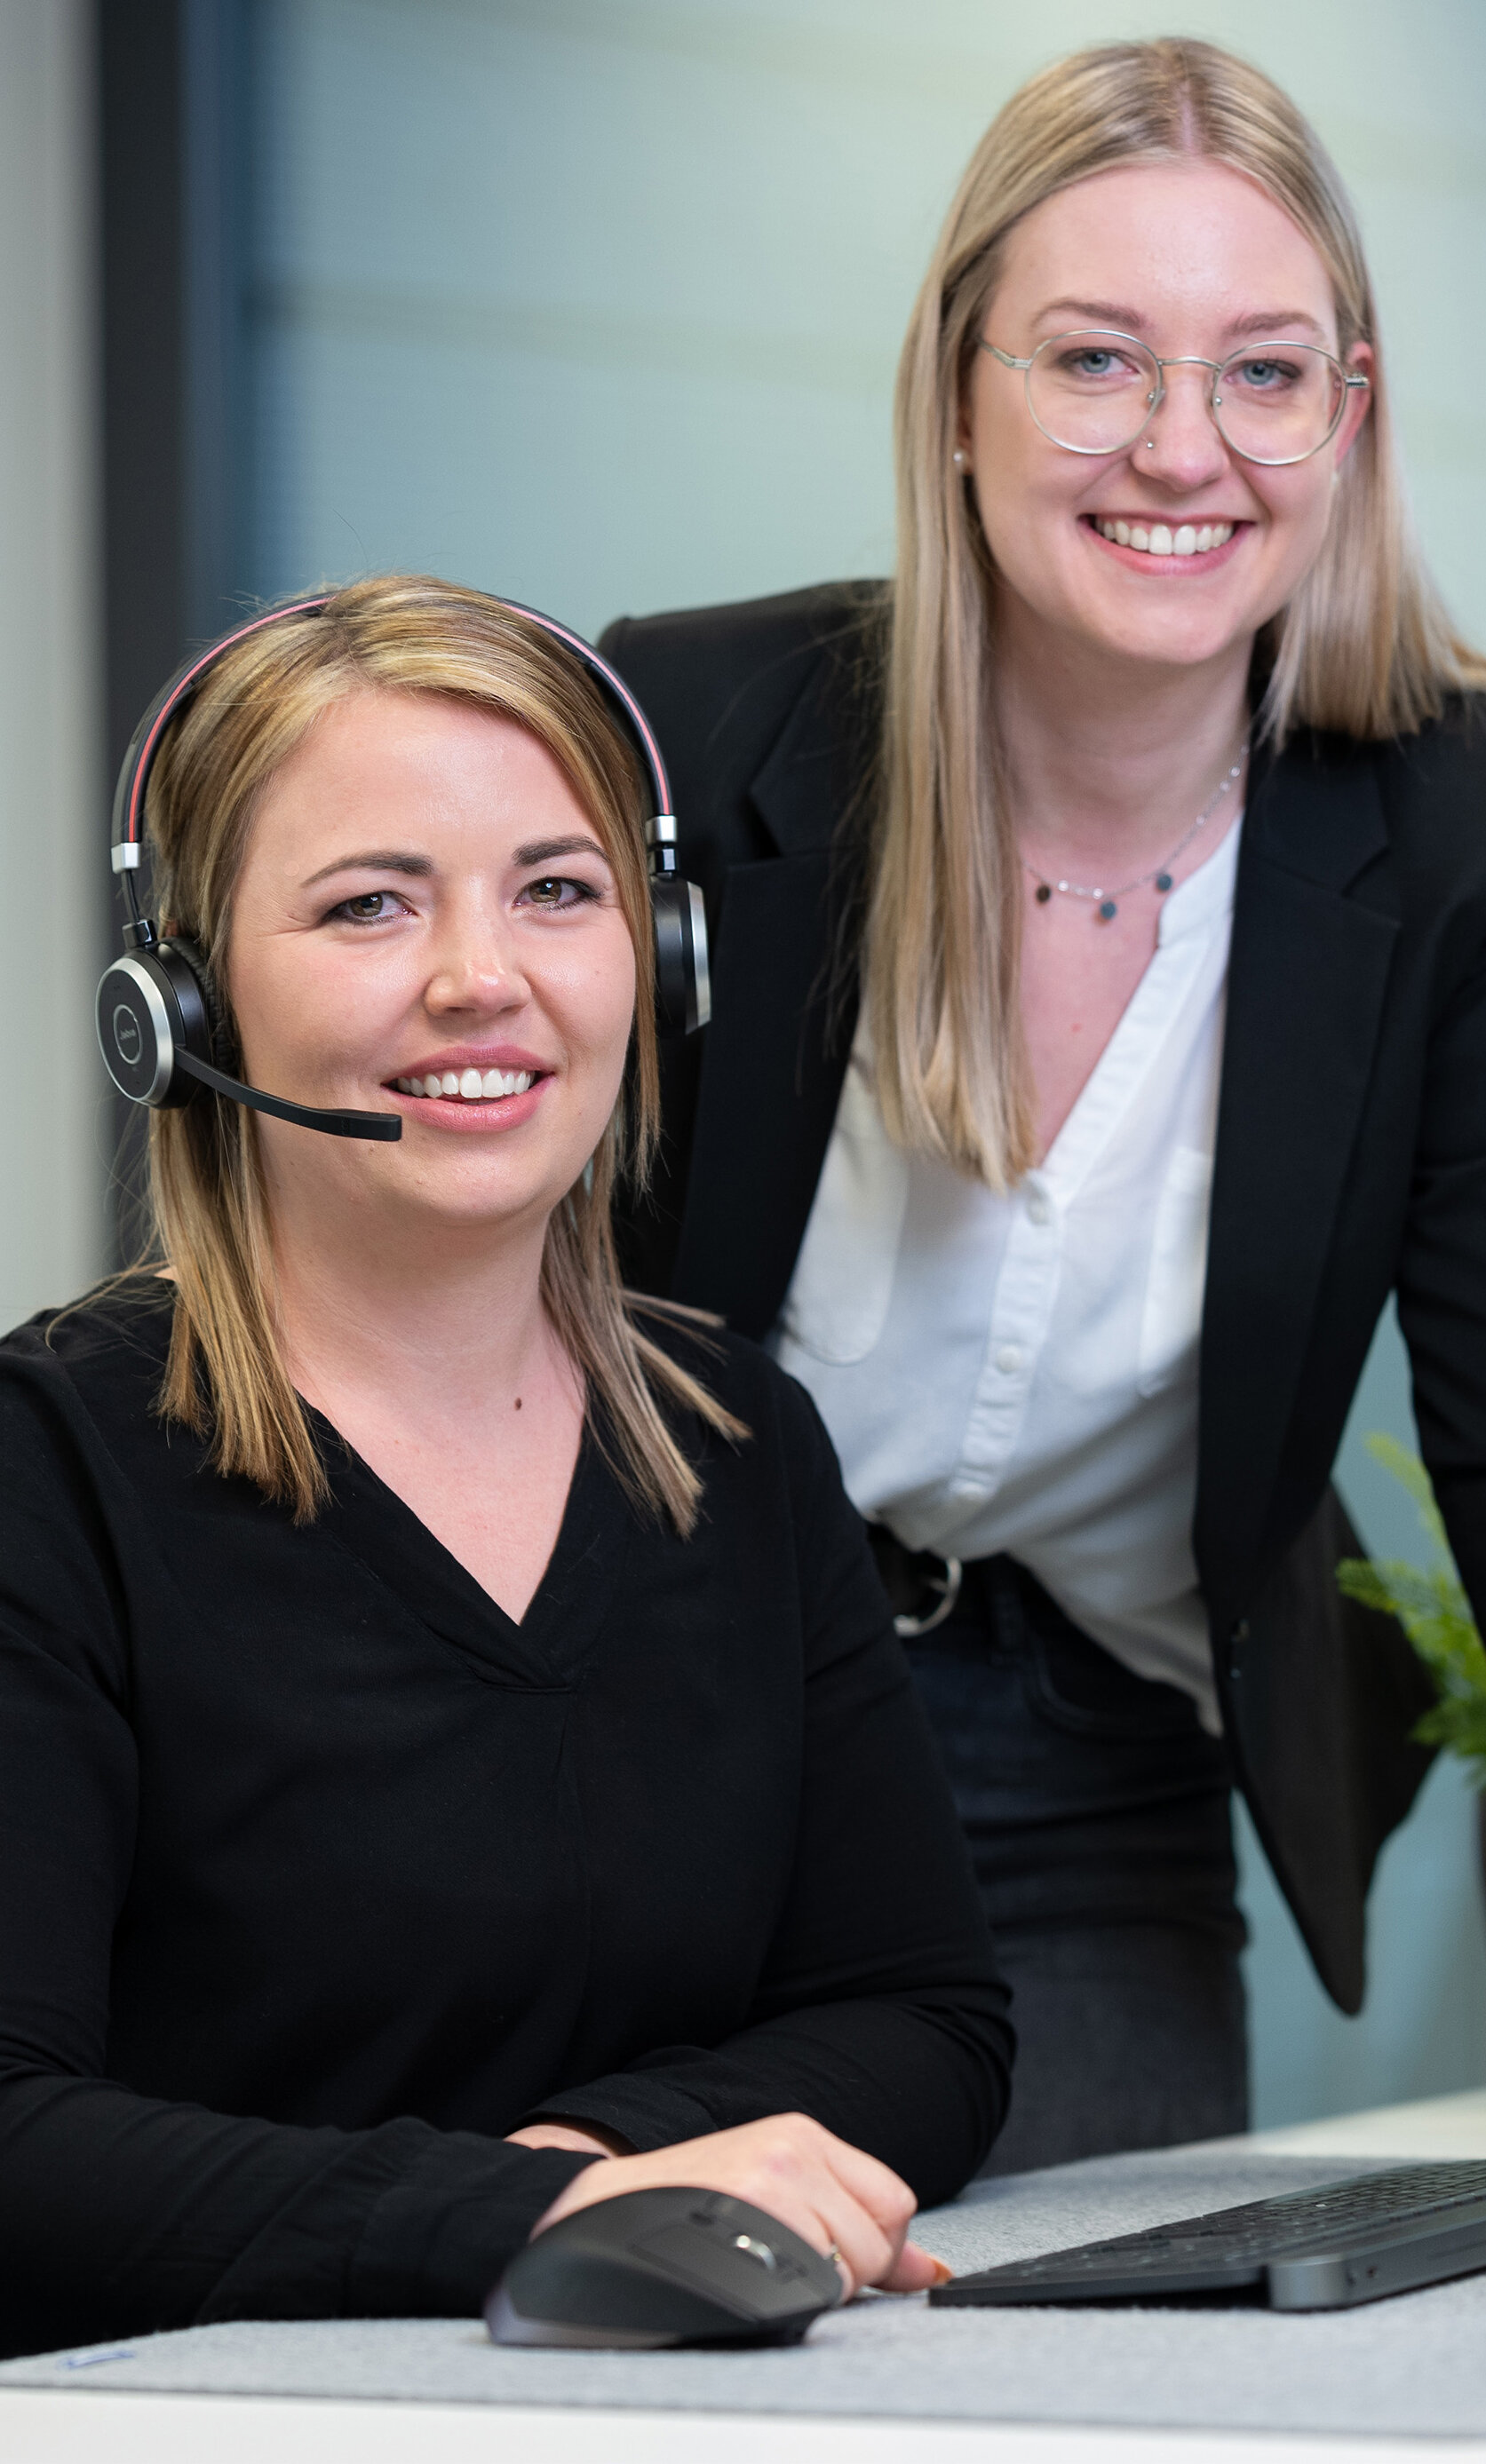 Unsere lächelnden Mitarbeiterinnen Laura mit Headset und Larissa daneben stehend in einer alltäglichen Arbeitssituation gemeinsam vor dem Computerbildschirm. | © Bamboo Health Care GmbH